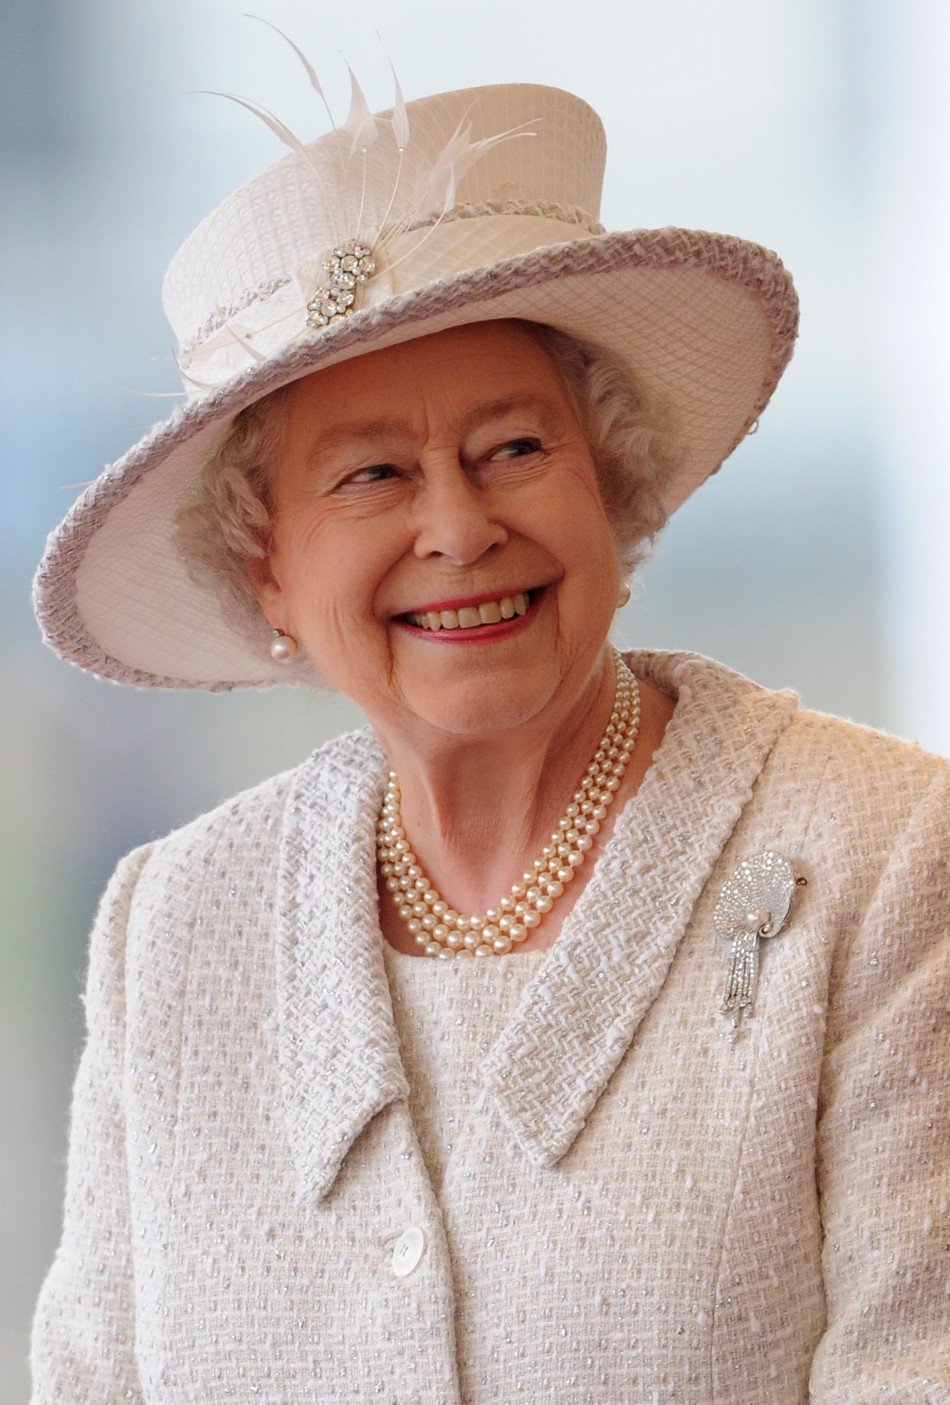 http://nationalreport.net/wp-content/uploads/2013/05/Queen-Elizabeth.jpg